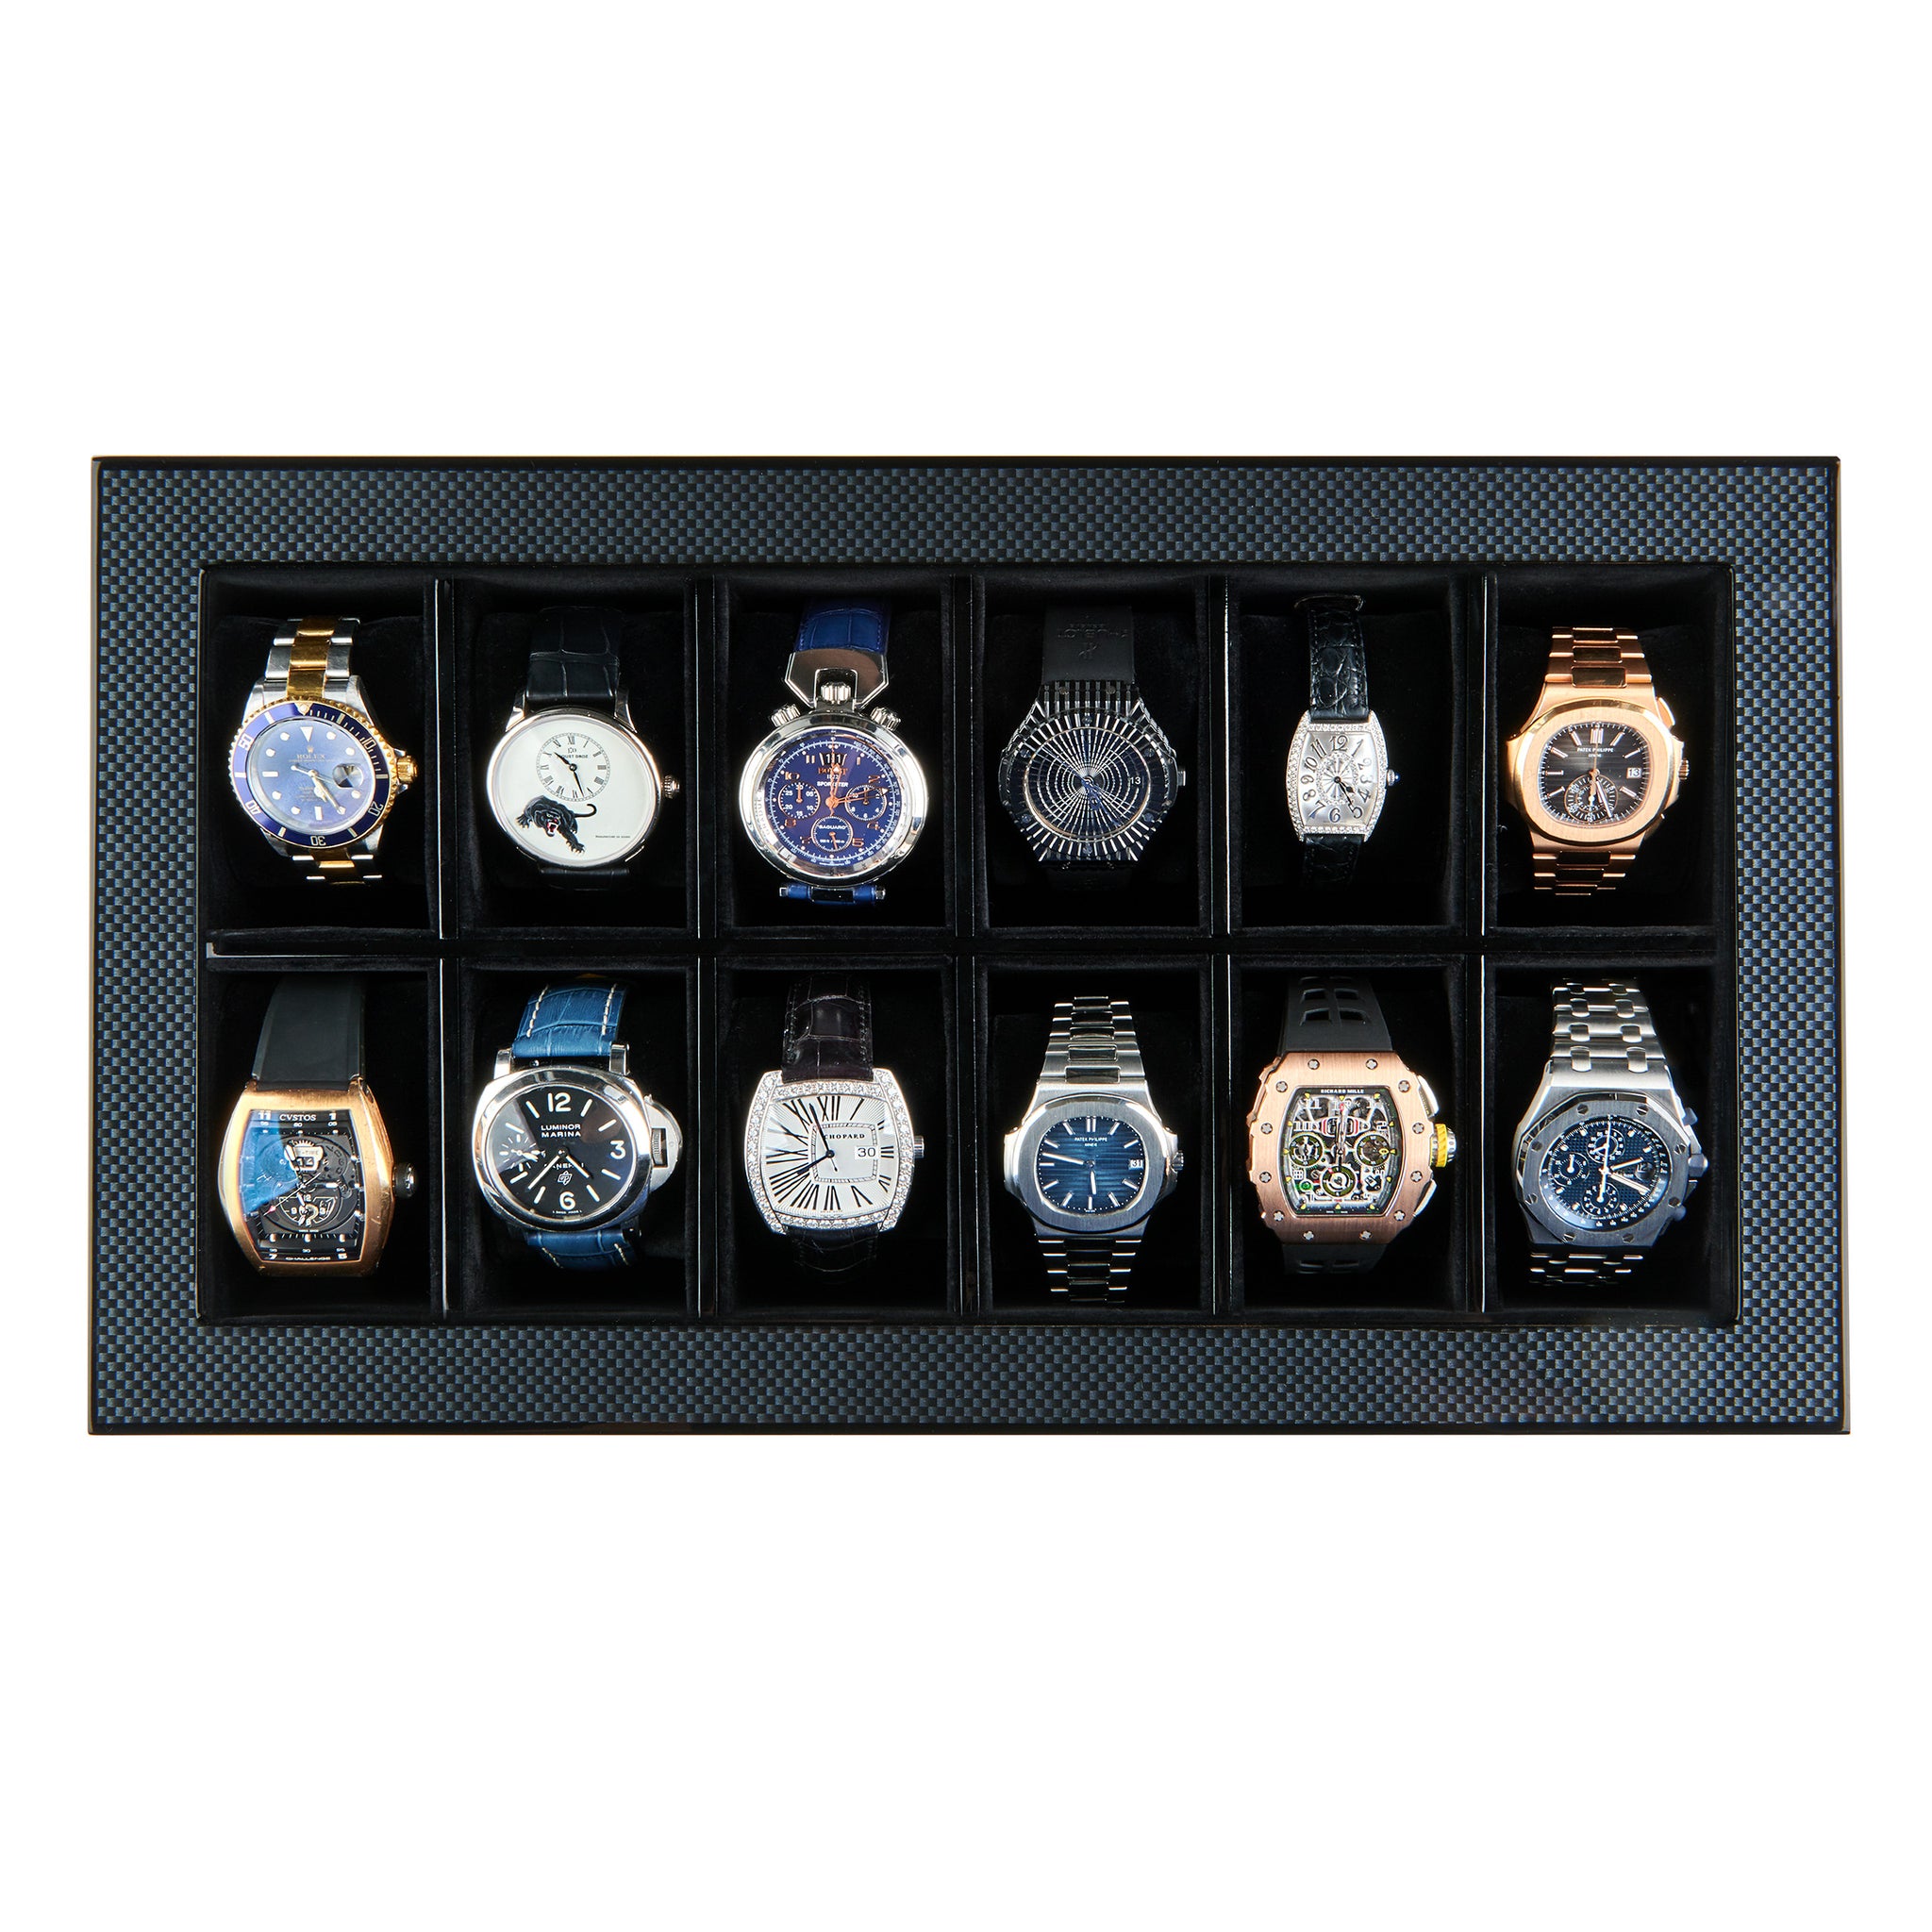 Watch Box / Watch Storage / Watch Display / Large Watch Case / 